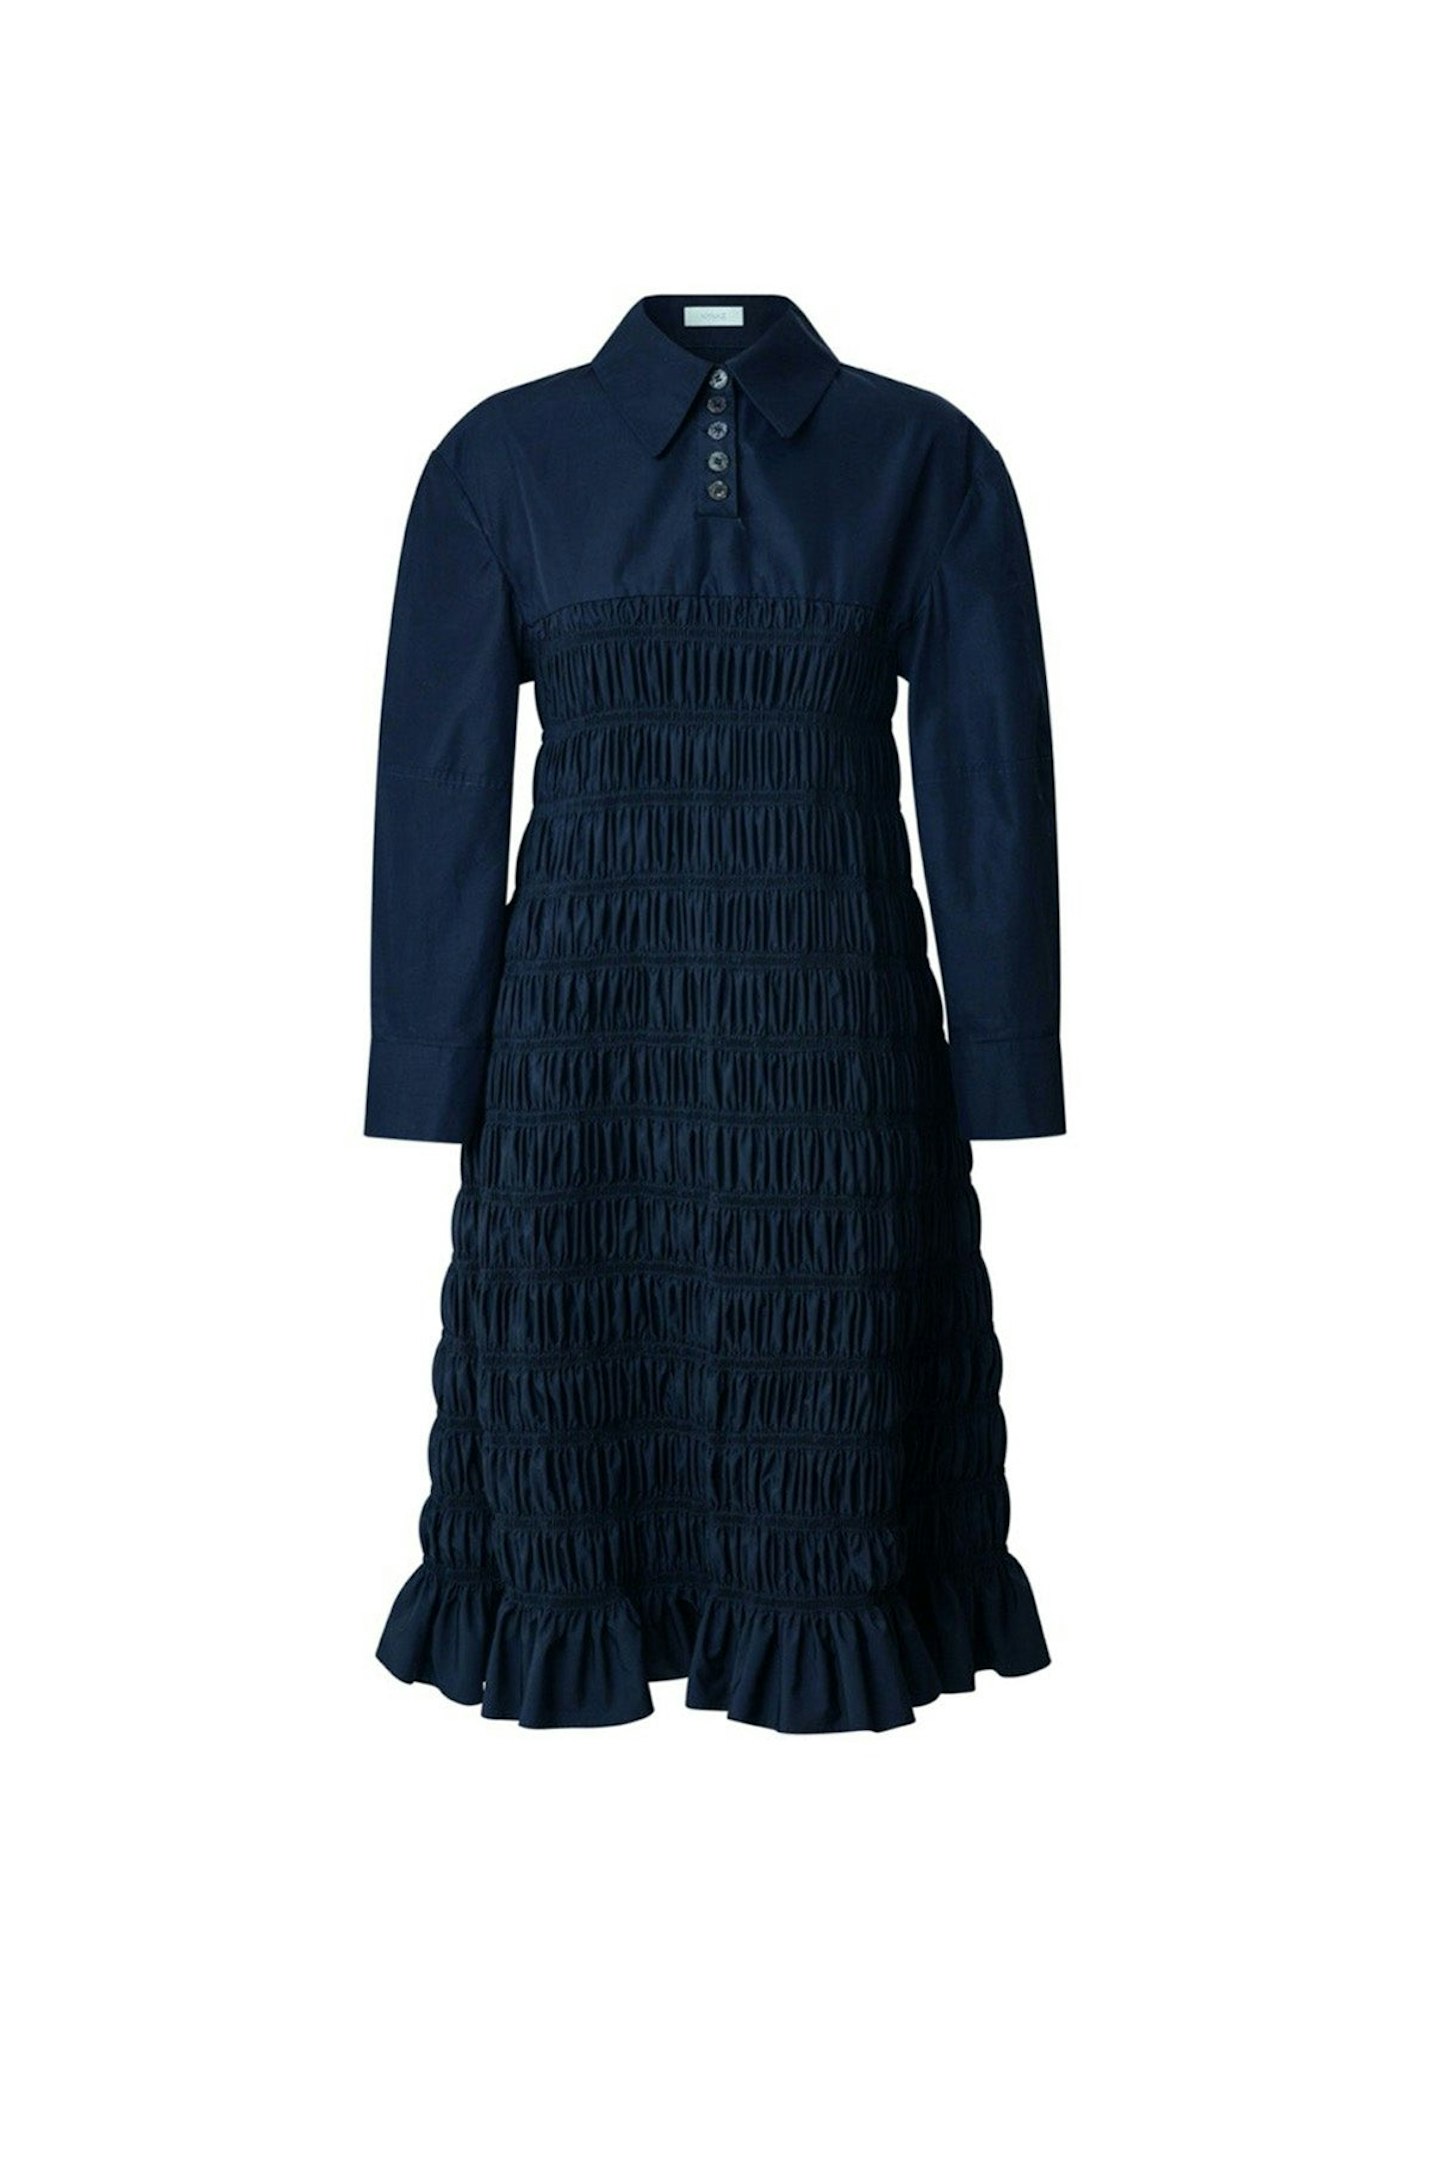 Nynne, Della Black Dress, £787